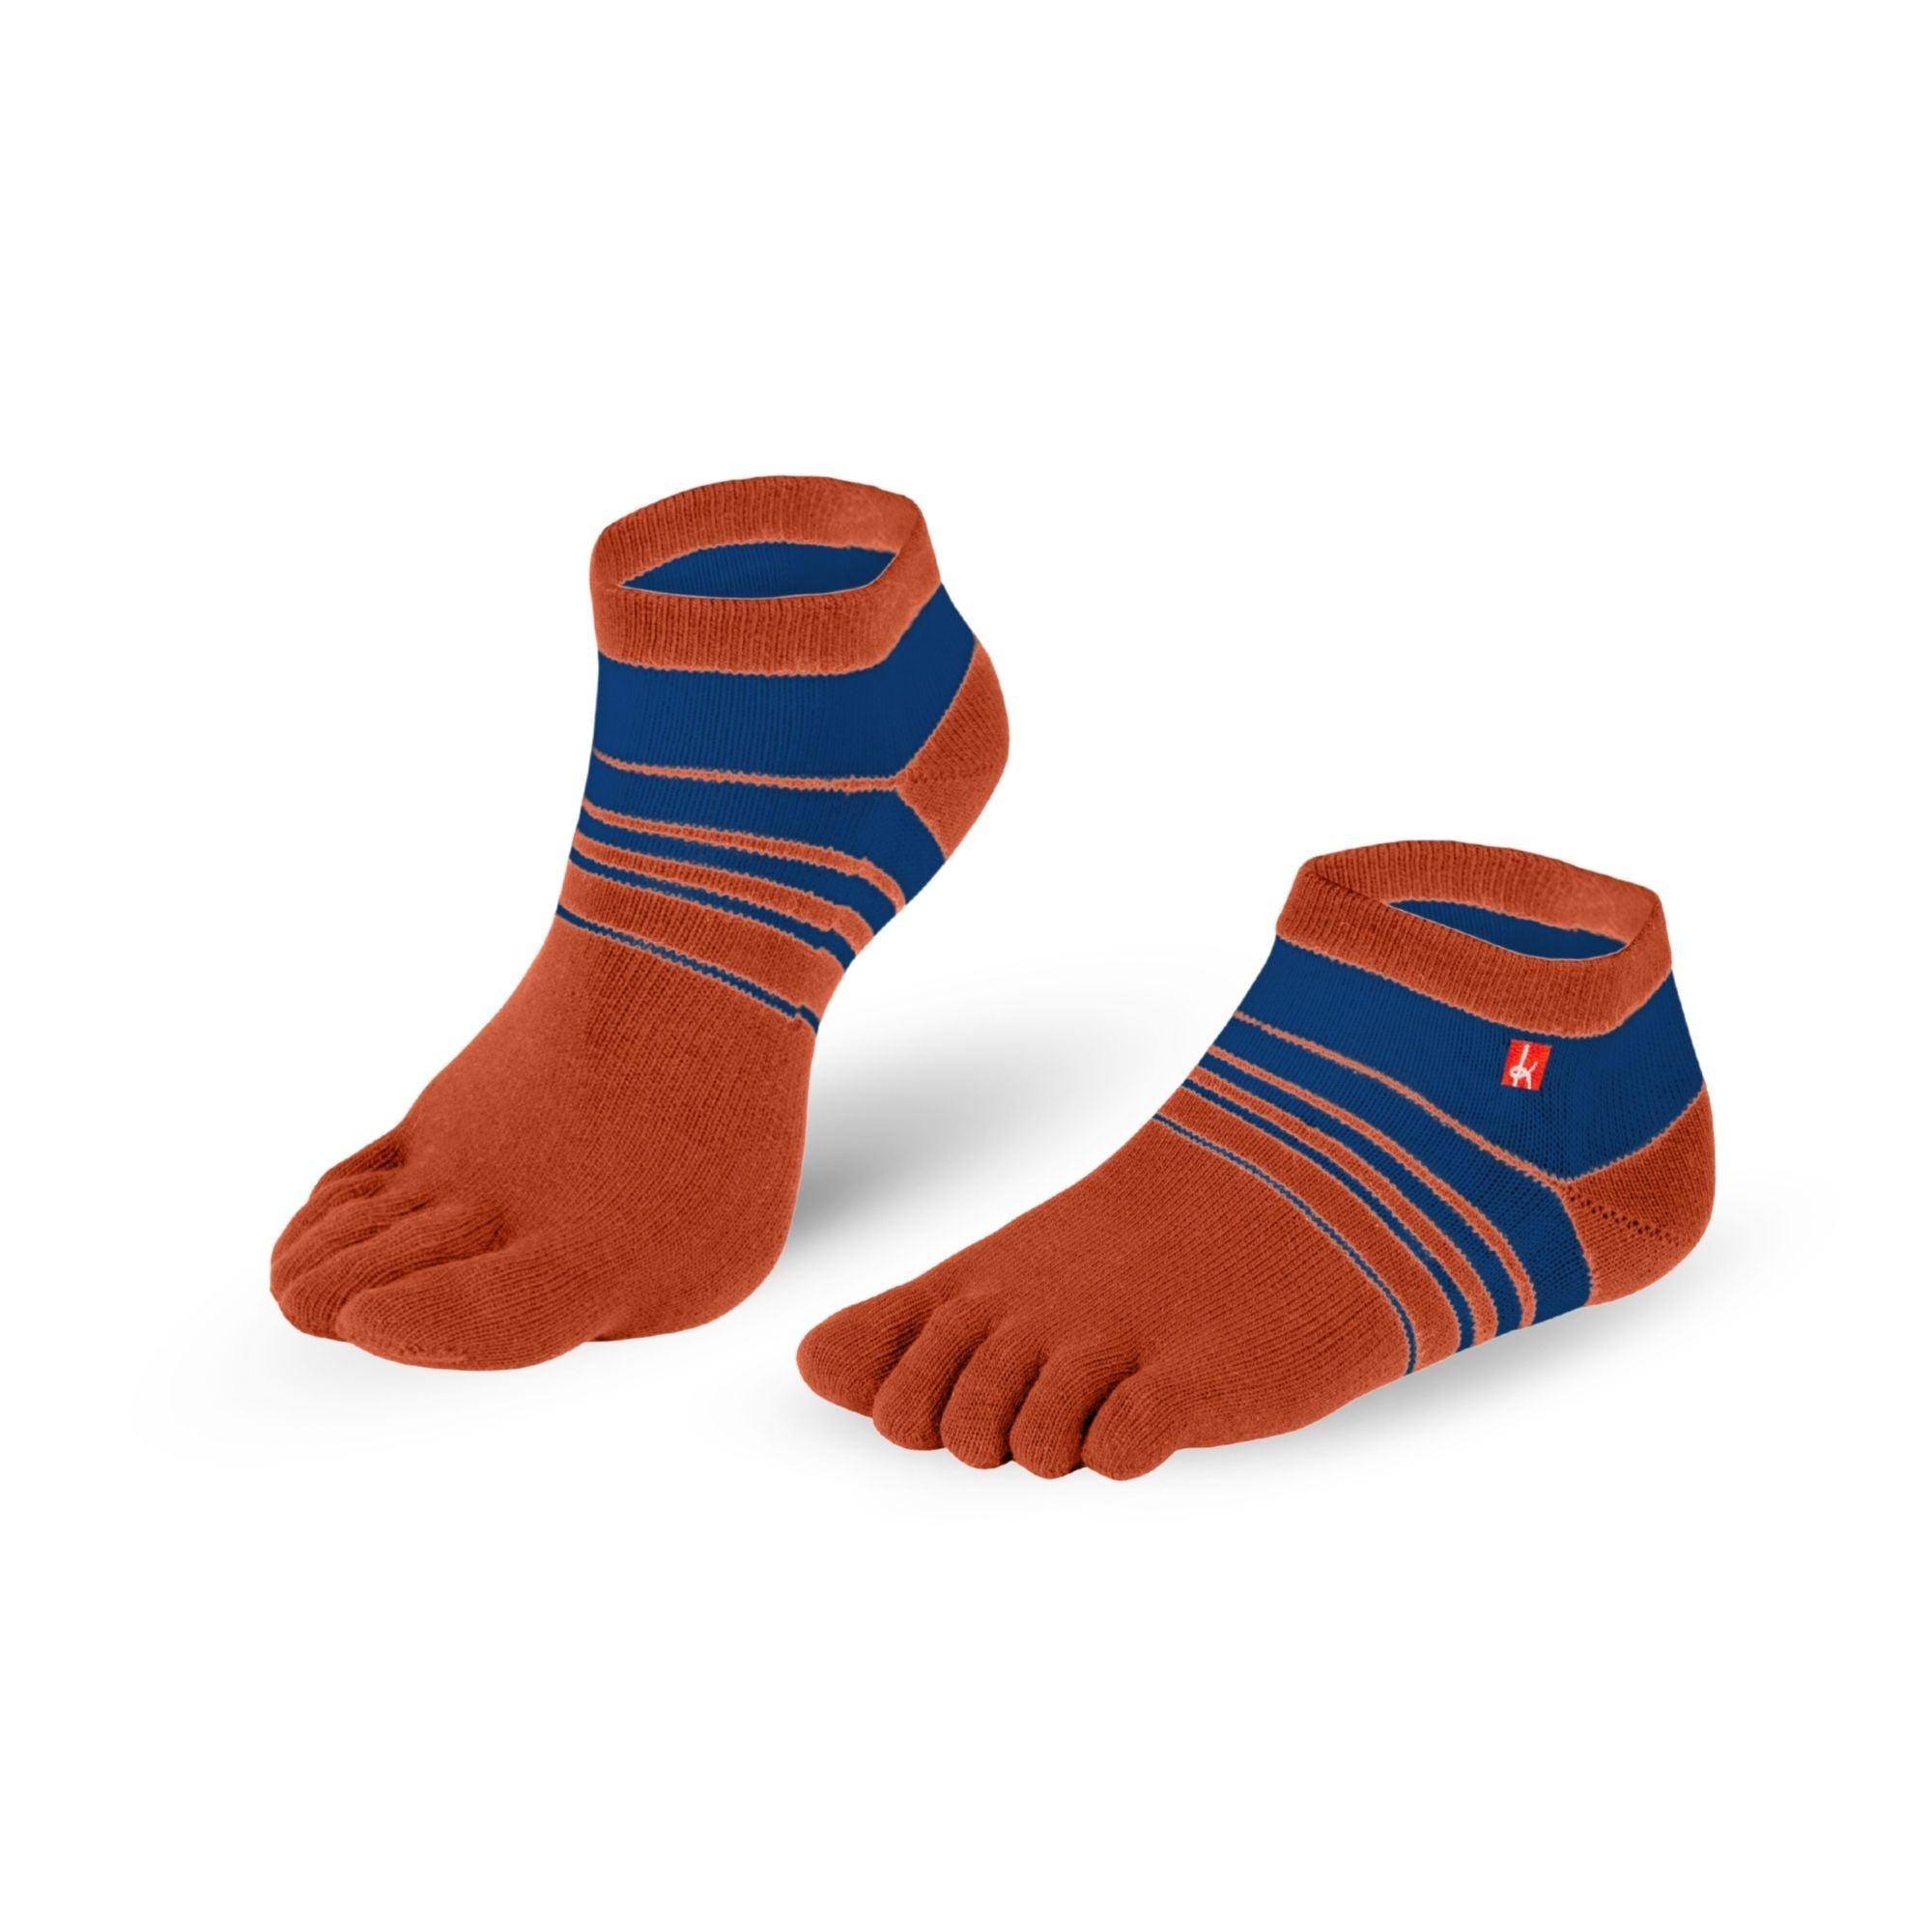 Knitido Track & Trail Spins barfods ankle tåsokker til kvinder og mænd i farven orange/blue, par